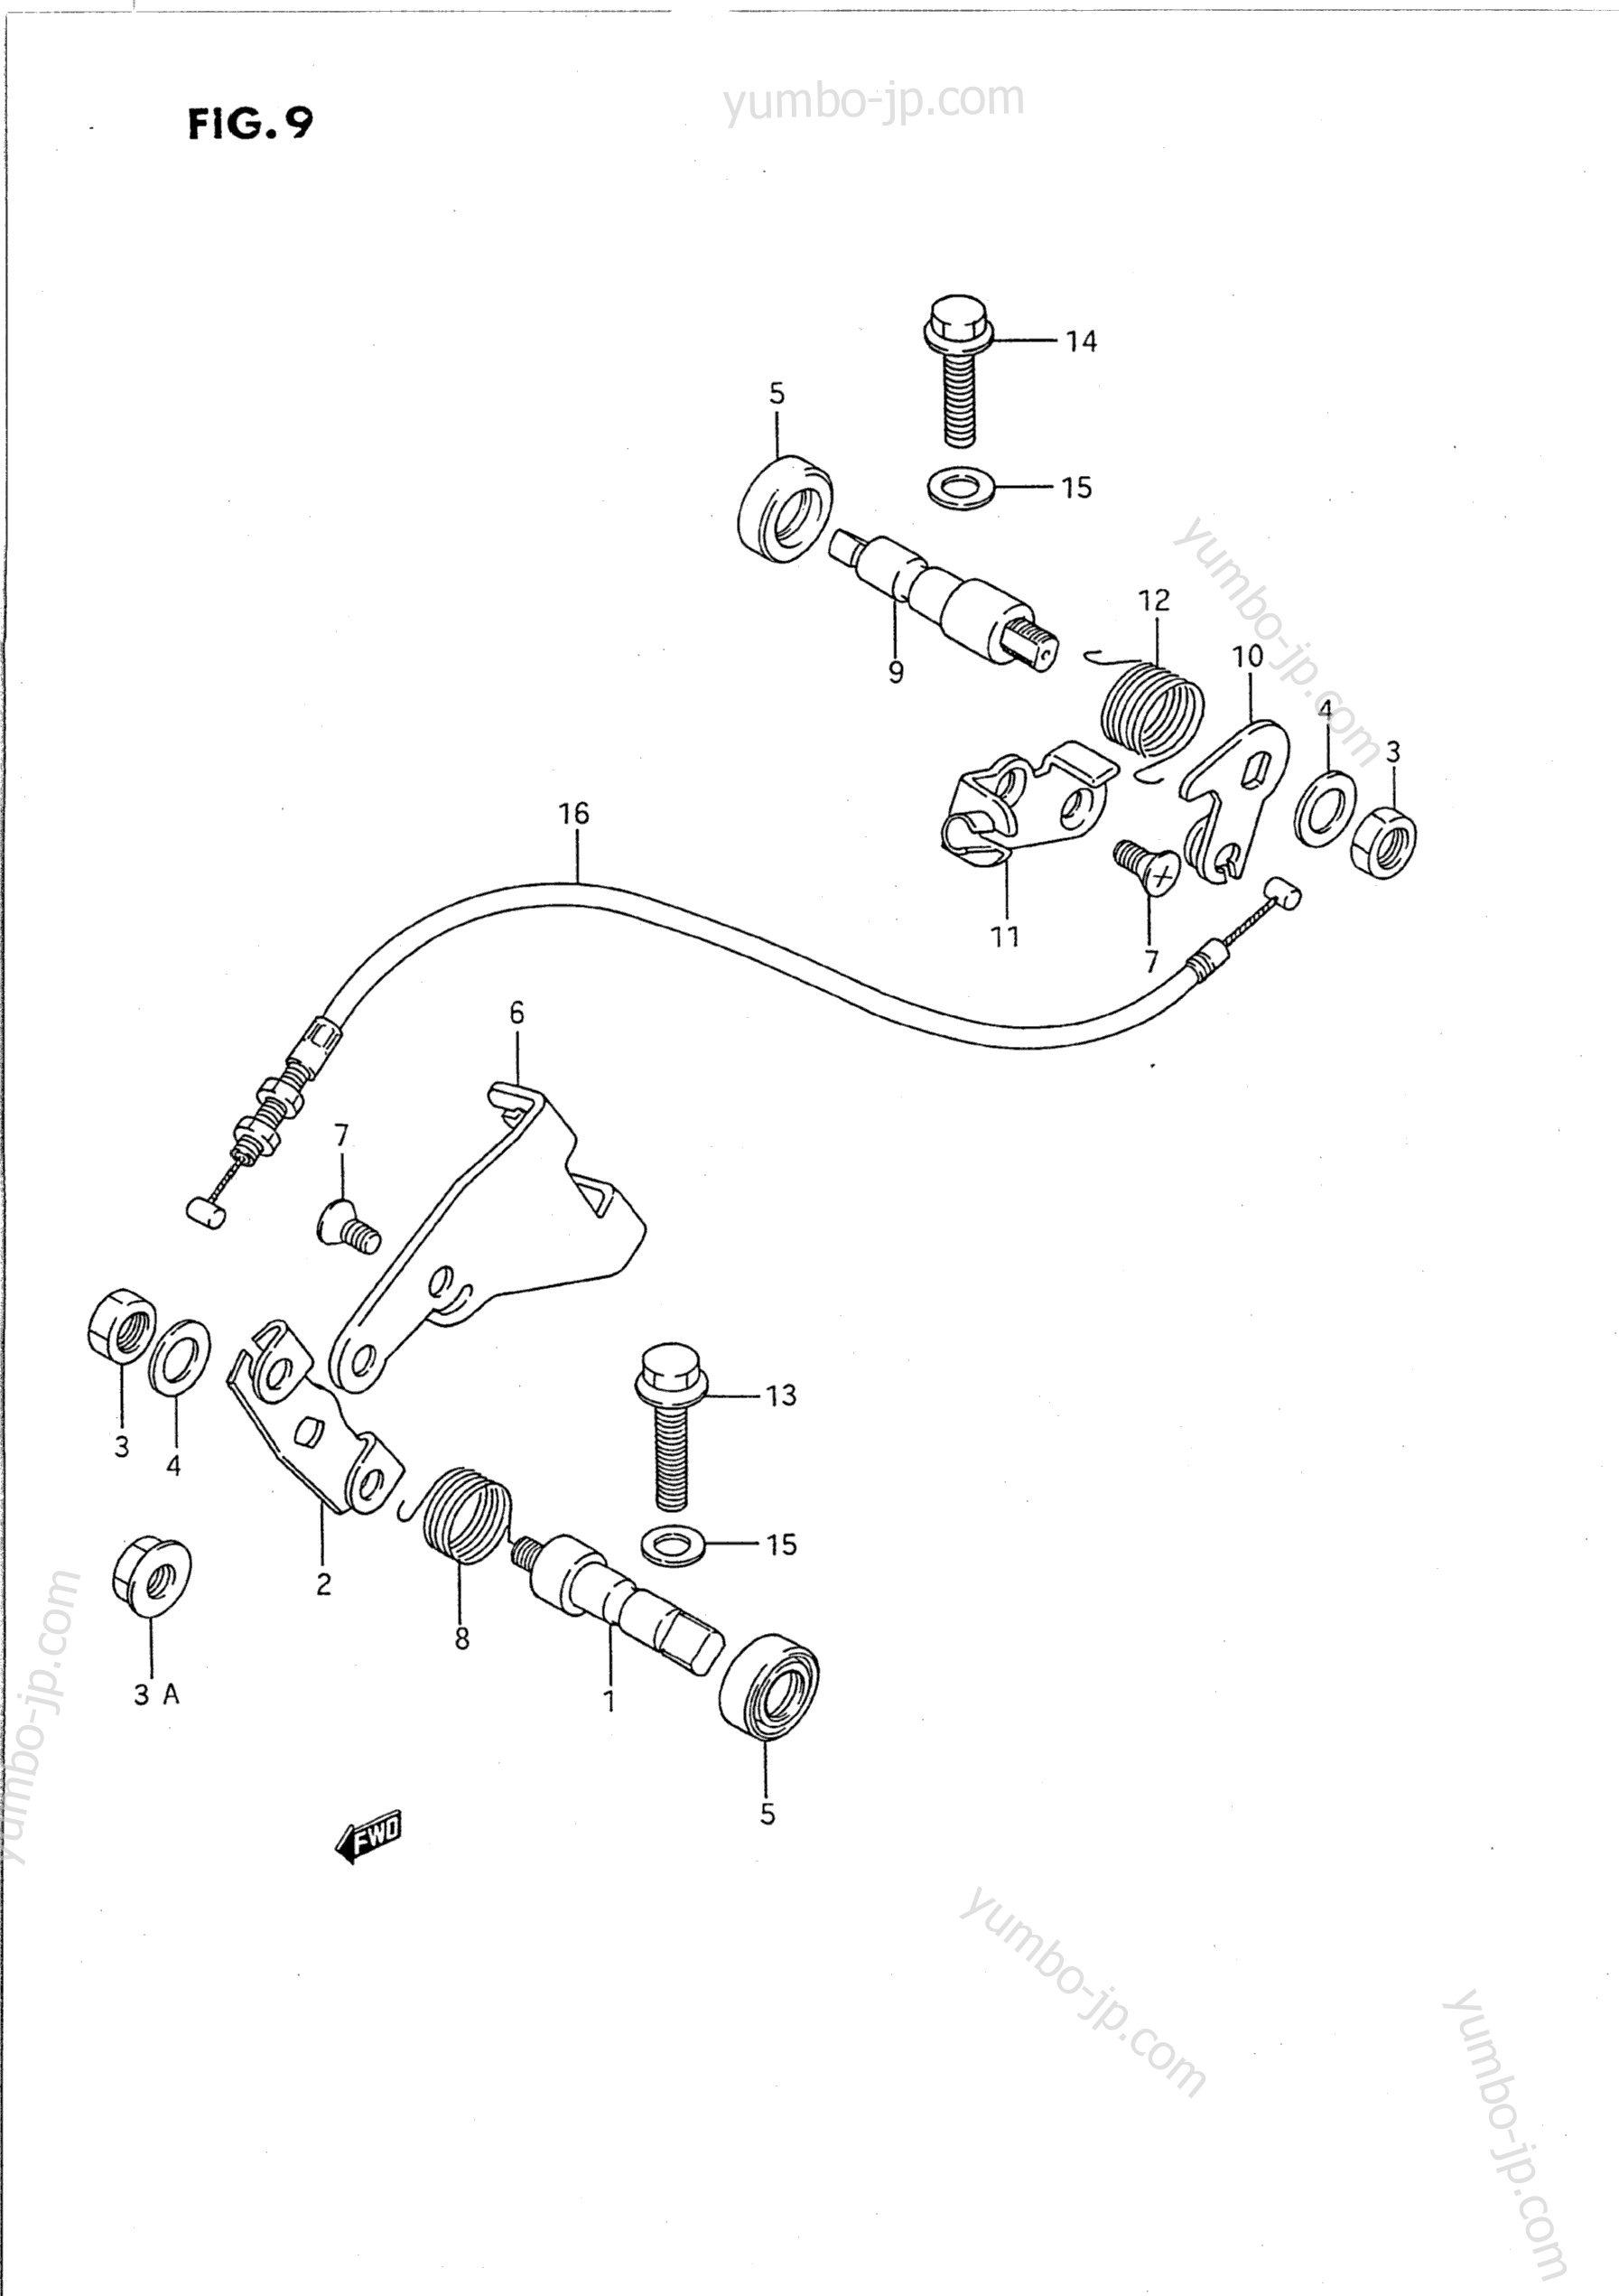 DECOMP SHAFT for motorcycles SUZUKI Intruder (VS1400GLP) 1994 year